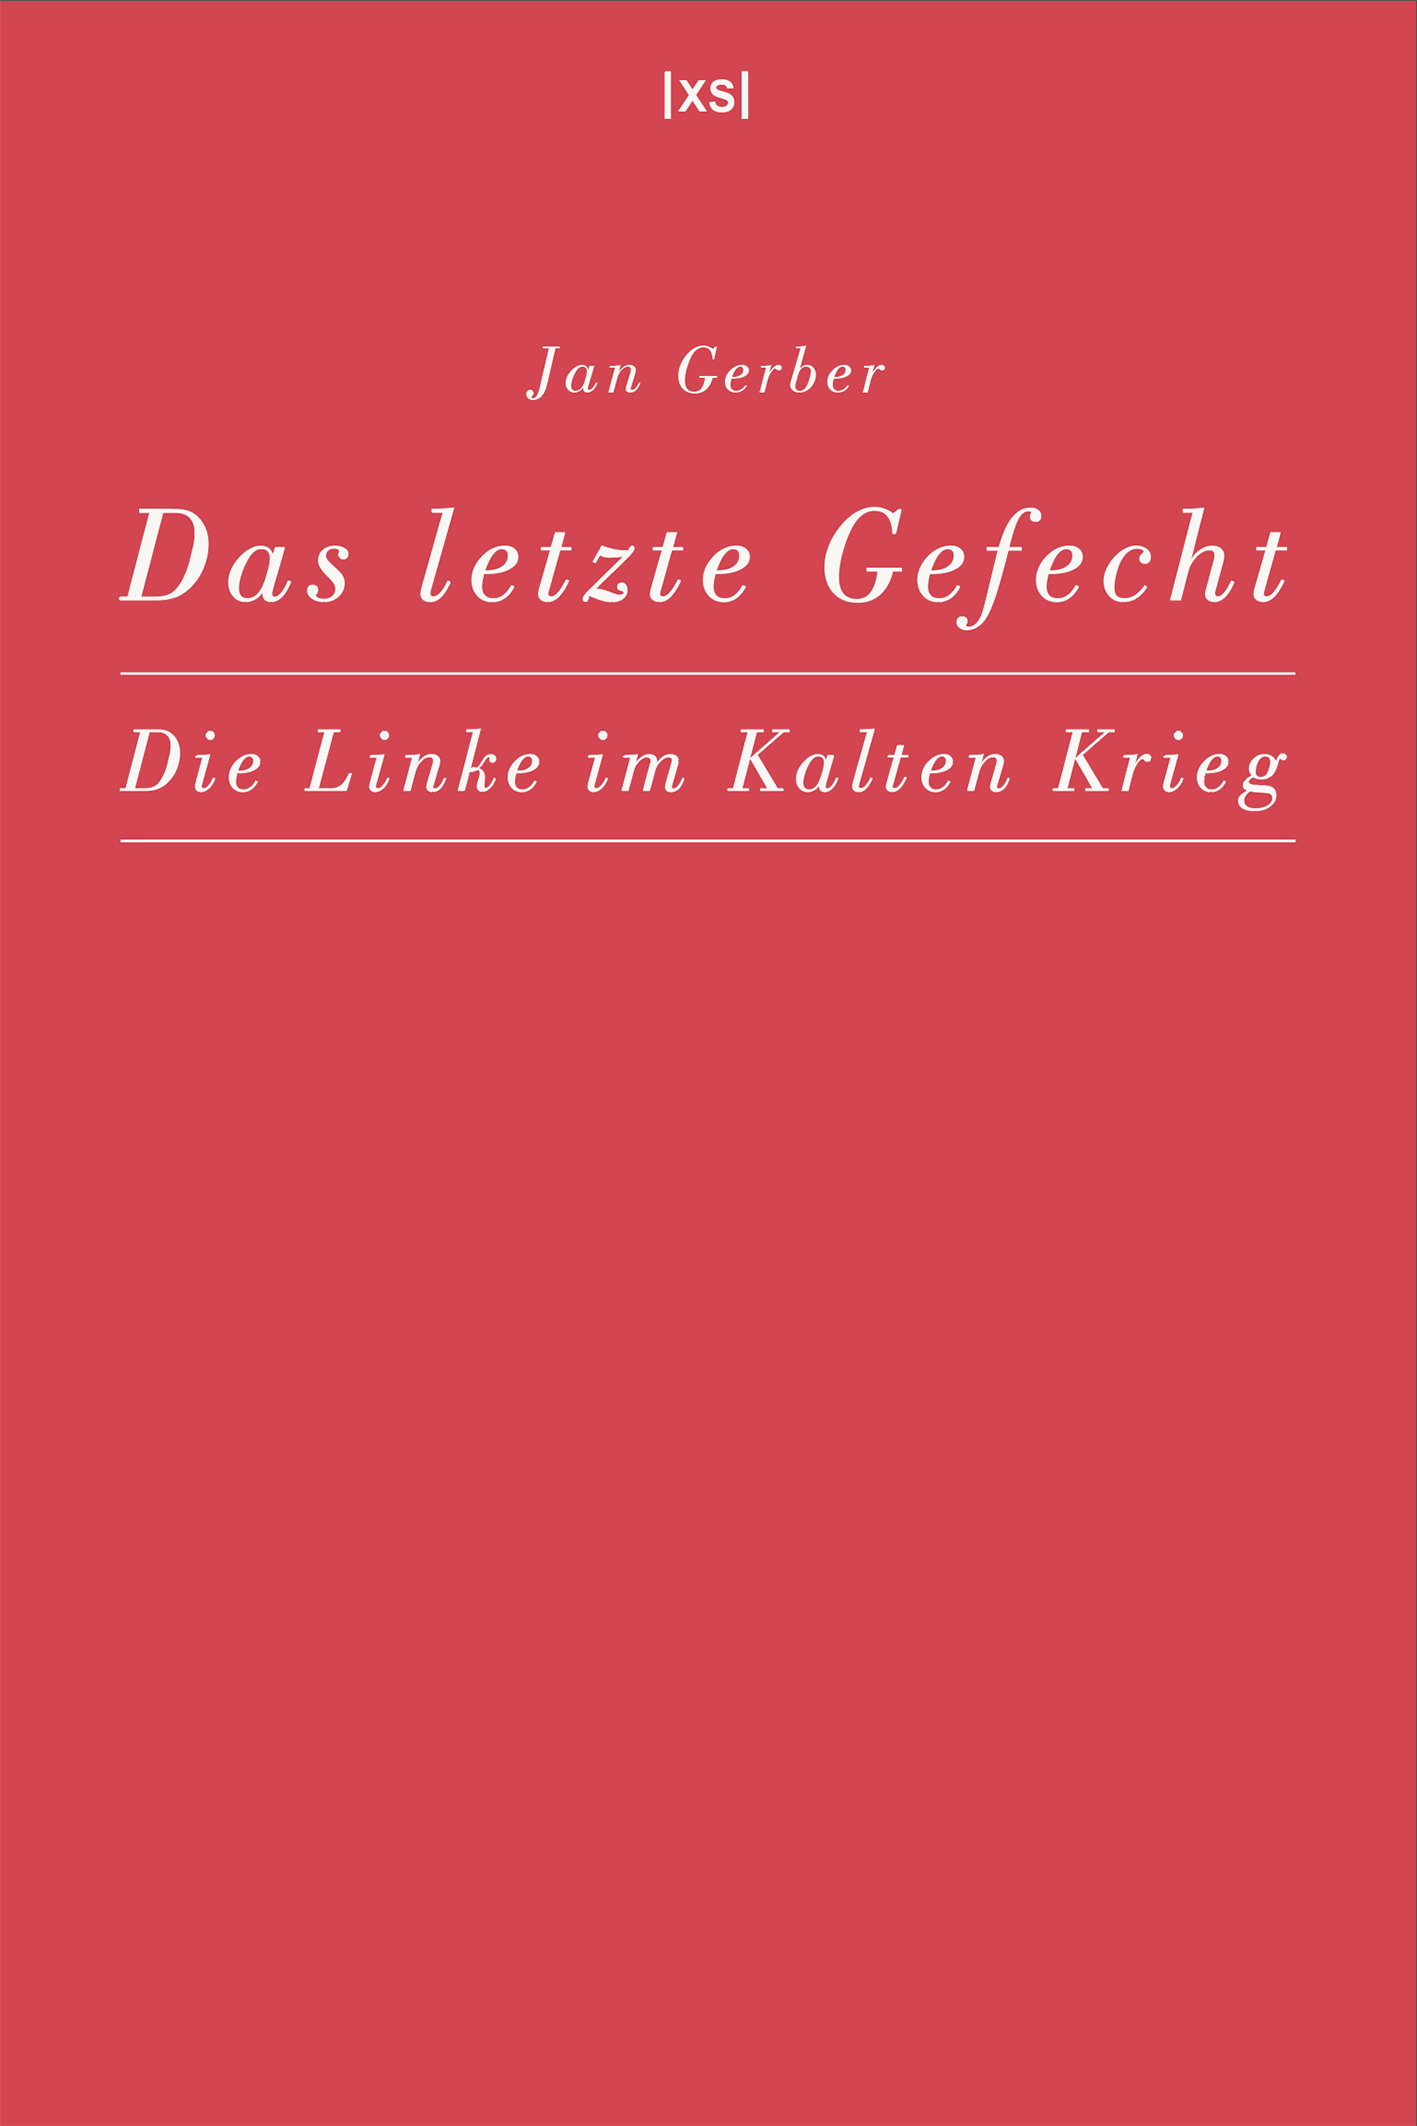 Buchcover: Jan Gerber - Das letzte Gefecht